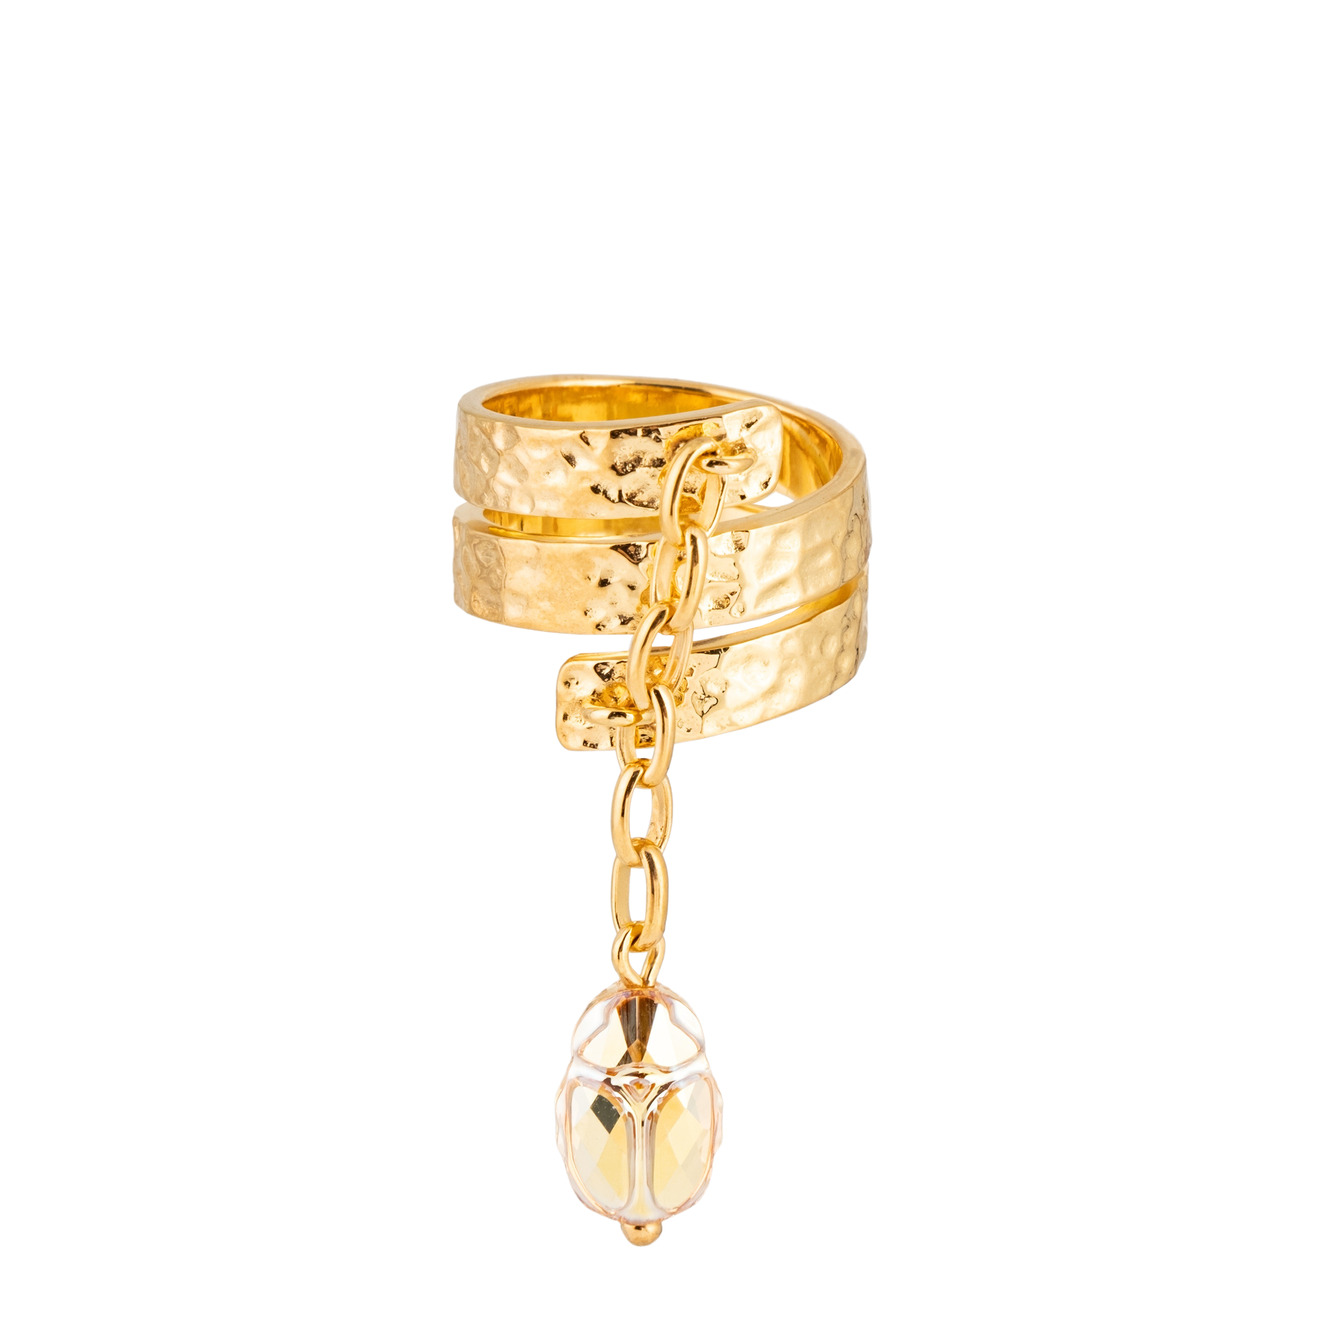 AMARIN Jewelry Кольцо Bugs gold цена и фото